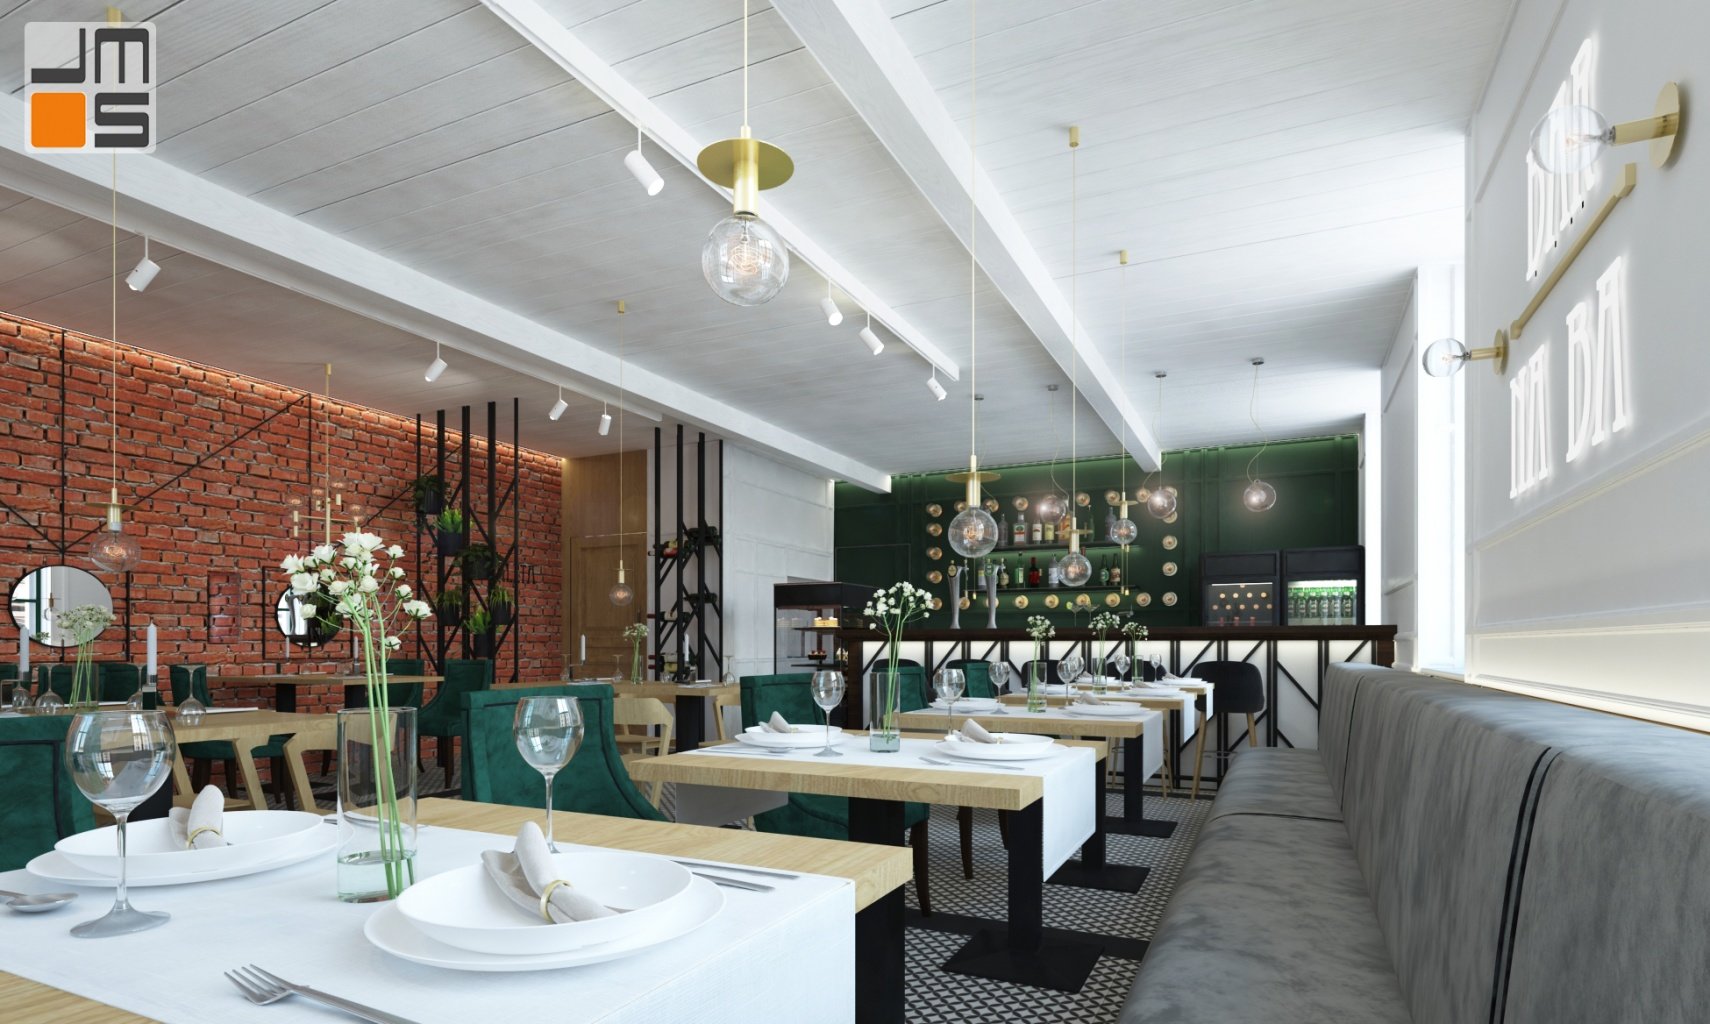 w projekcie wnętrz baru restauracji w Krakowie cegła pięknie łączy się z zielonymi i złotymi dodatkami w białych jasnych wnętrzach